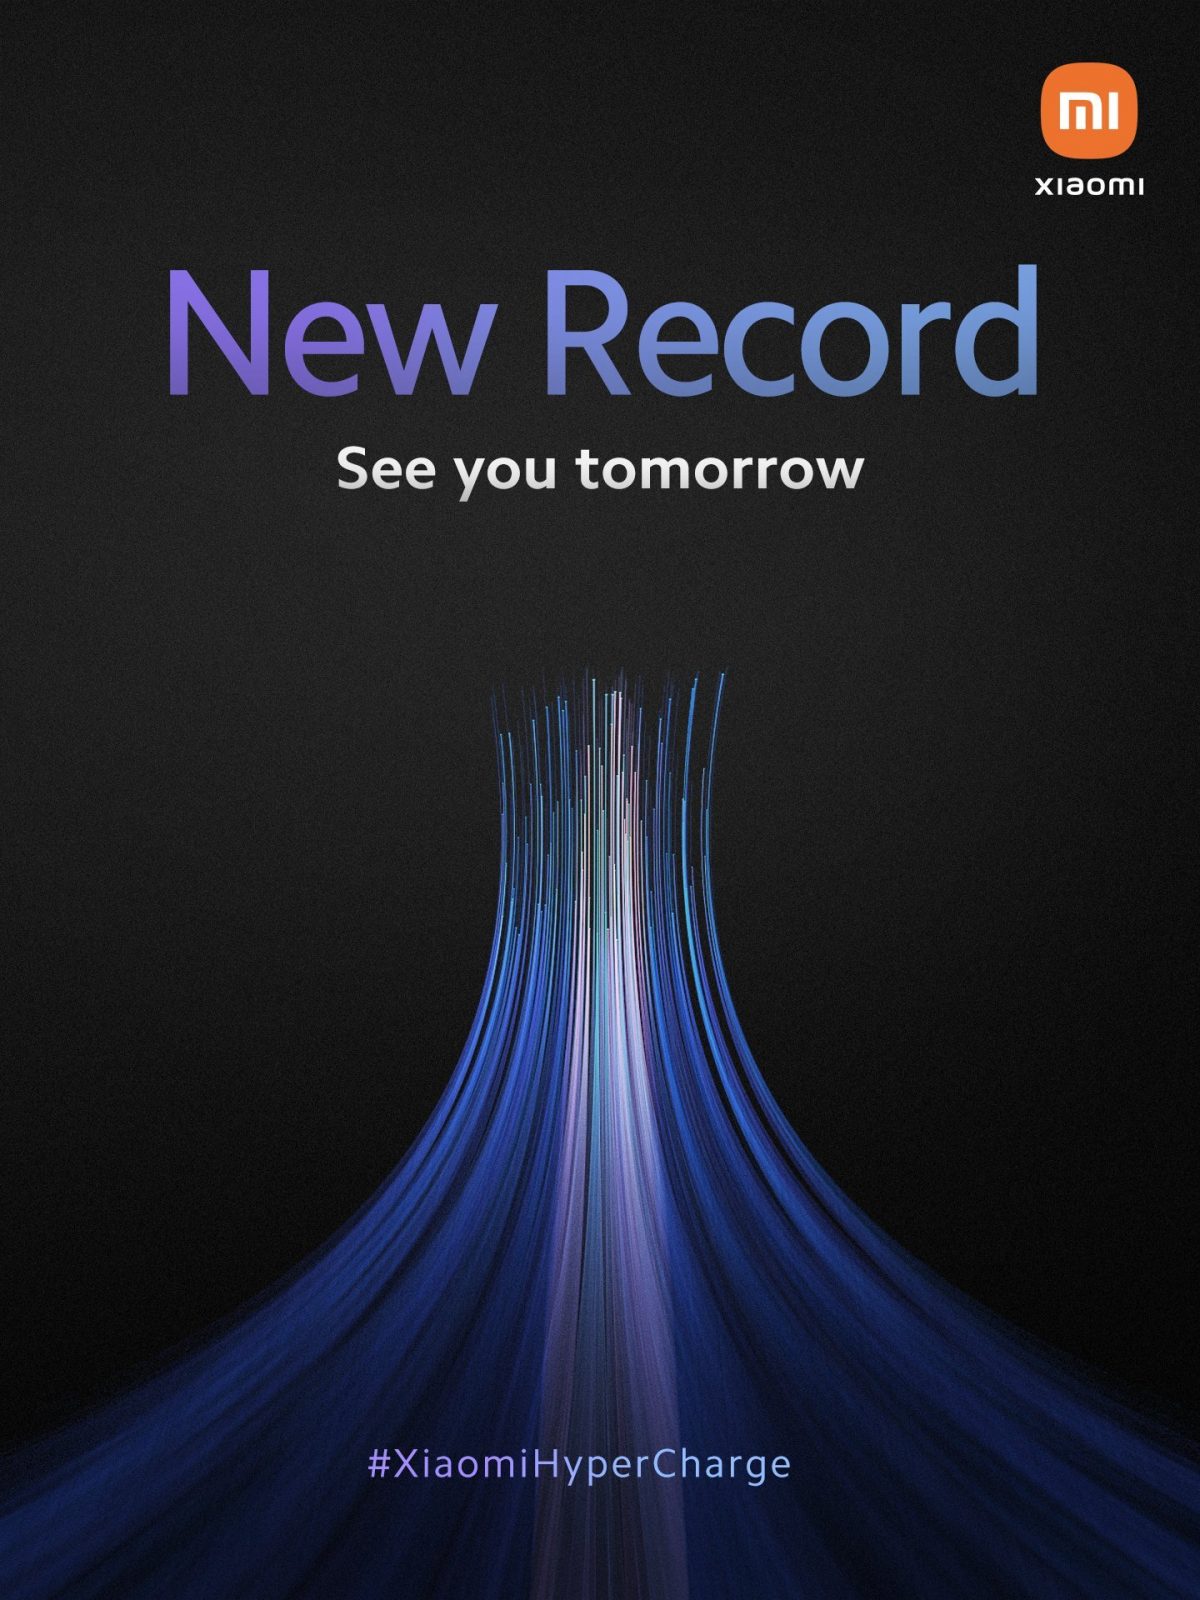 Xiaomi пообещала поставить новый рекорд быстрой зарядки